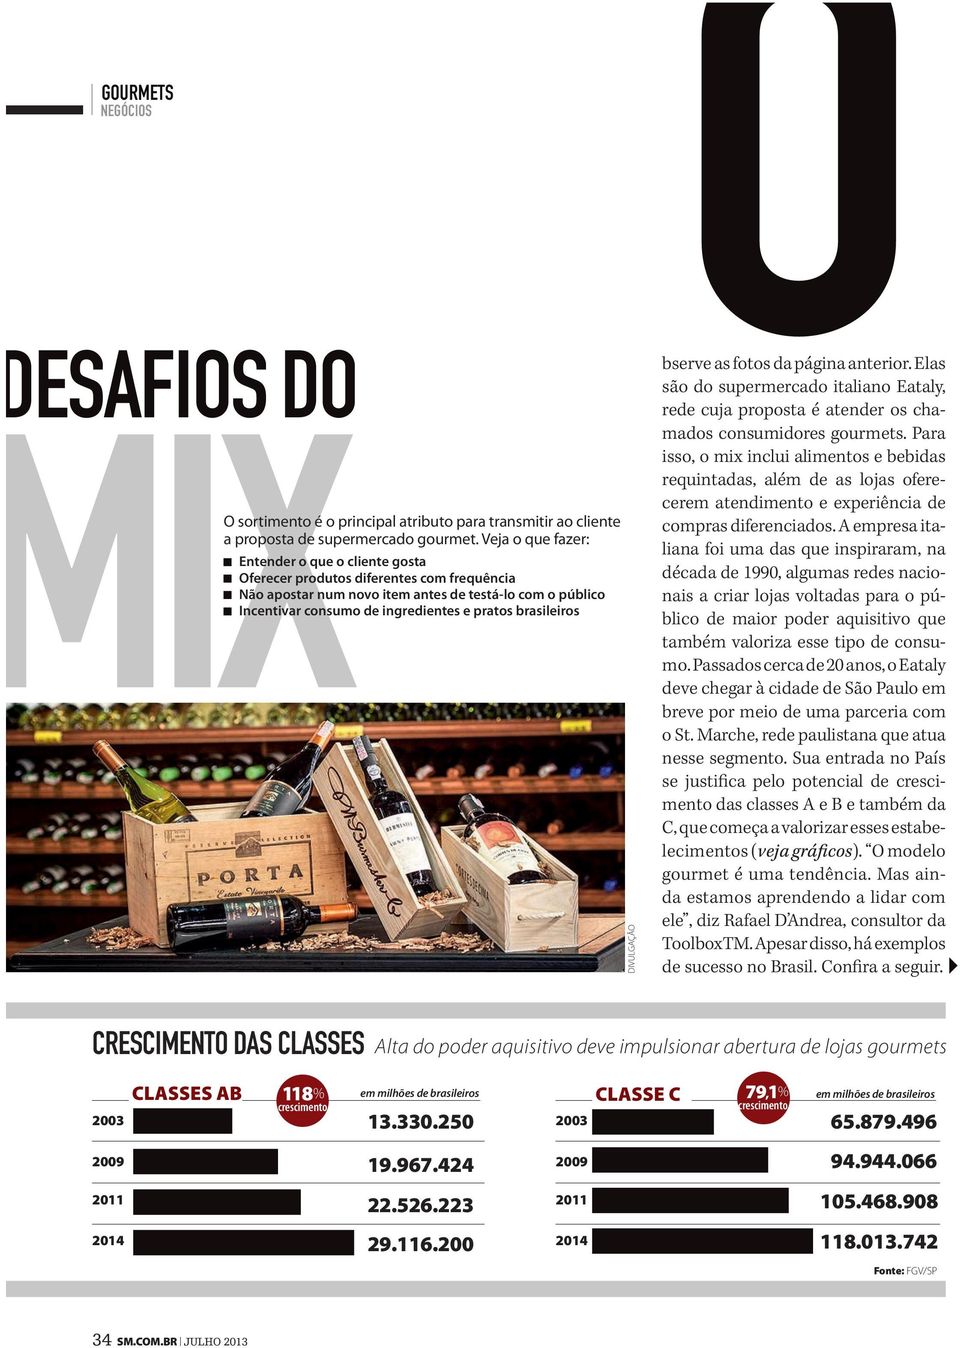 brasileiros DIVULGAÇÃO O bserve as fotos da página anterior. Elas são do supermercado italiano Eataly, rede cuja proposta é atender os chamados consumidores gourmets.